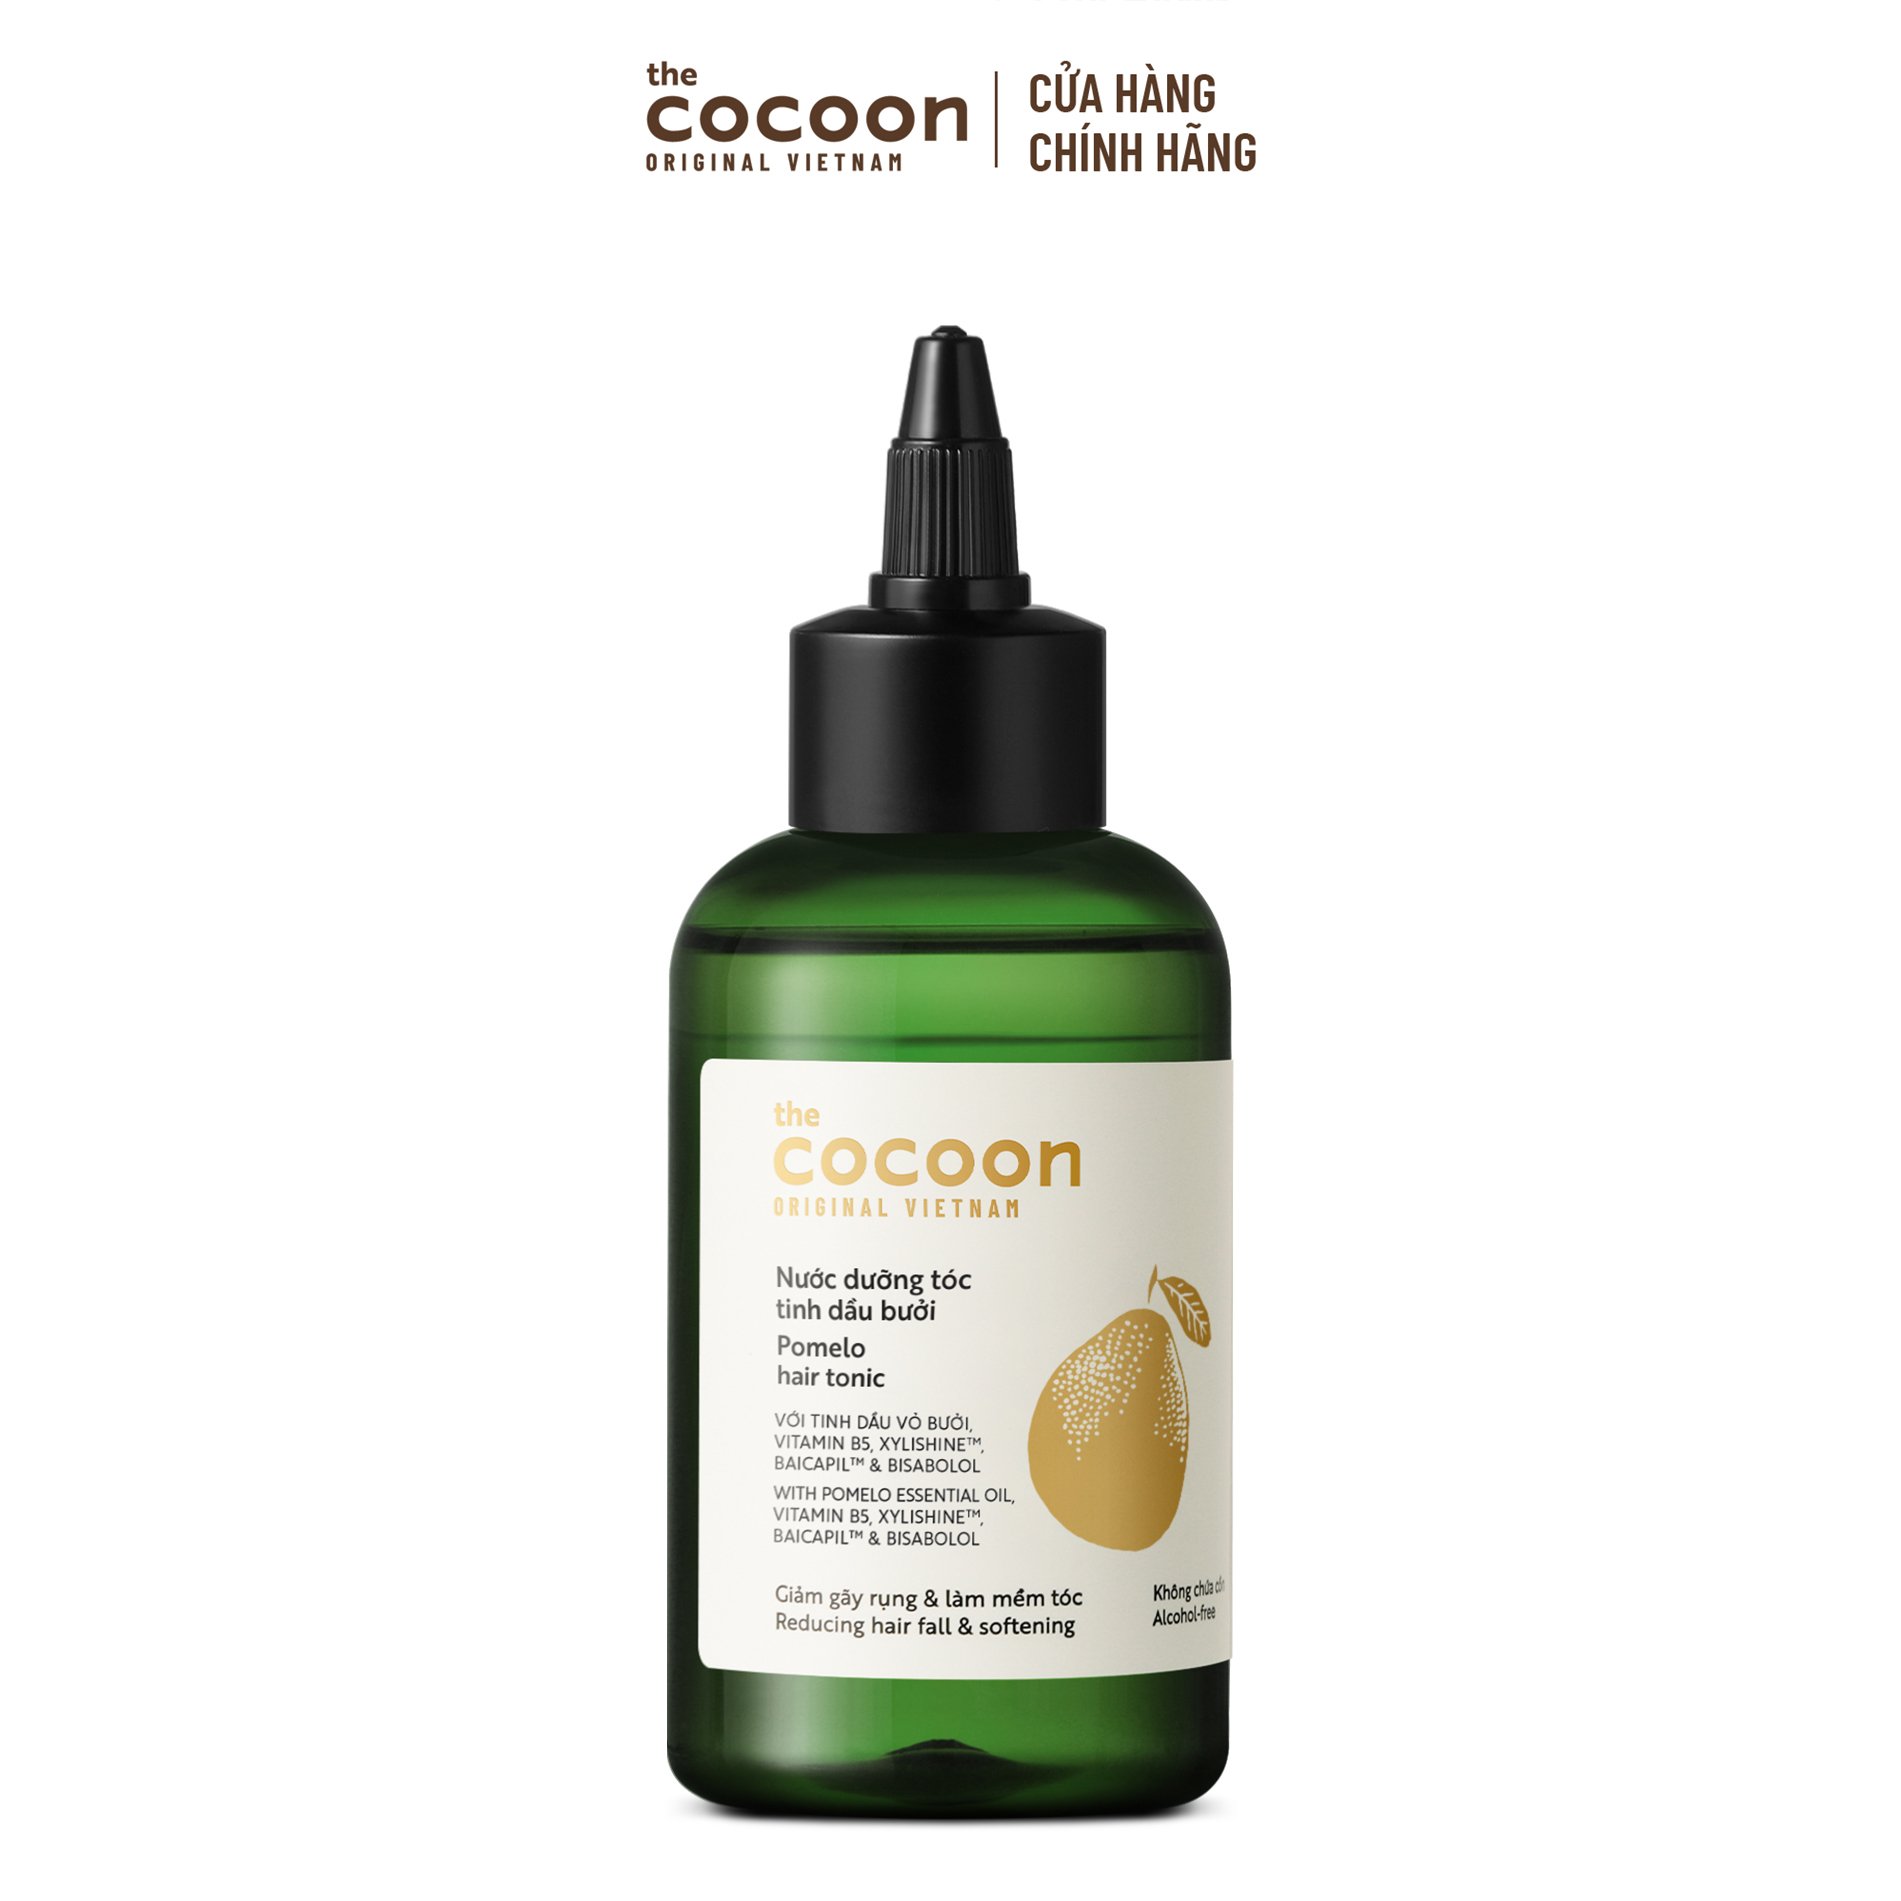 PHIÊN BẢN MỚI - Nước dưỡng tóc tinh dầu bưởi Cocoon giúp giảm gãy rụng & làm mềm tóc 140ml